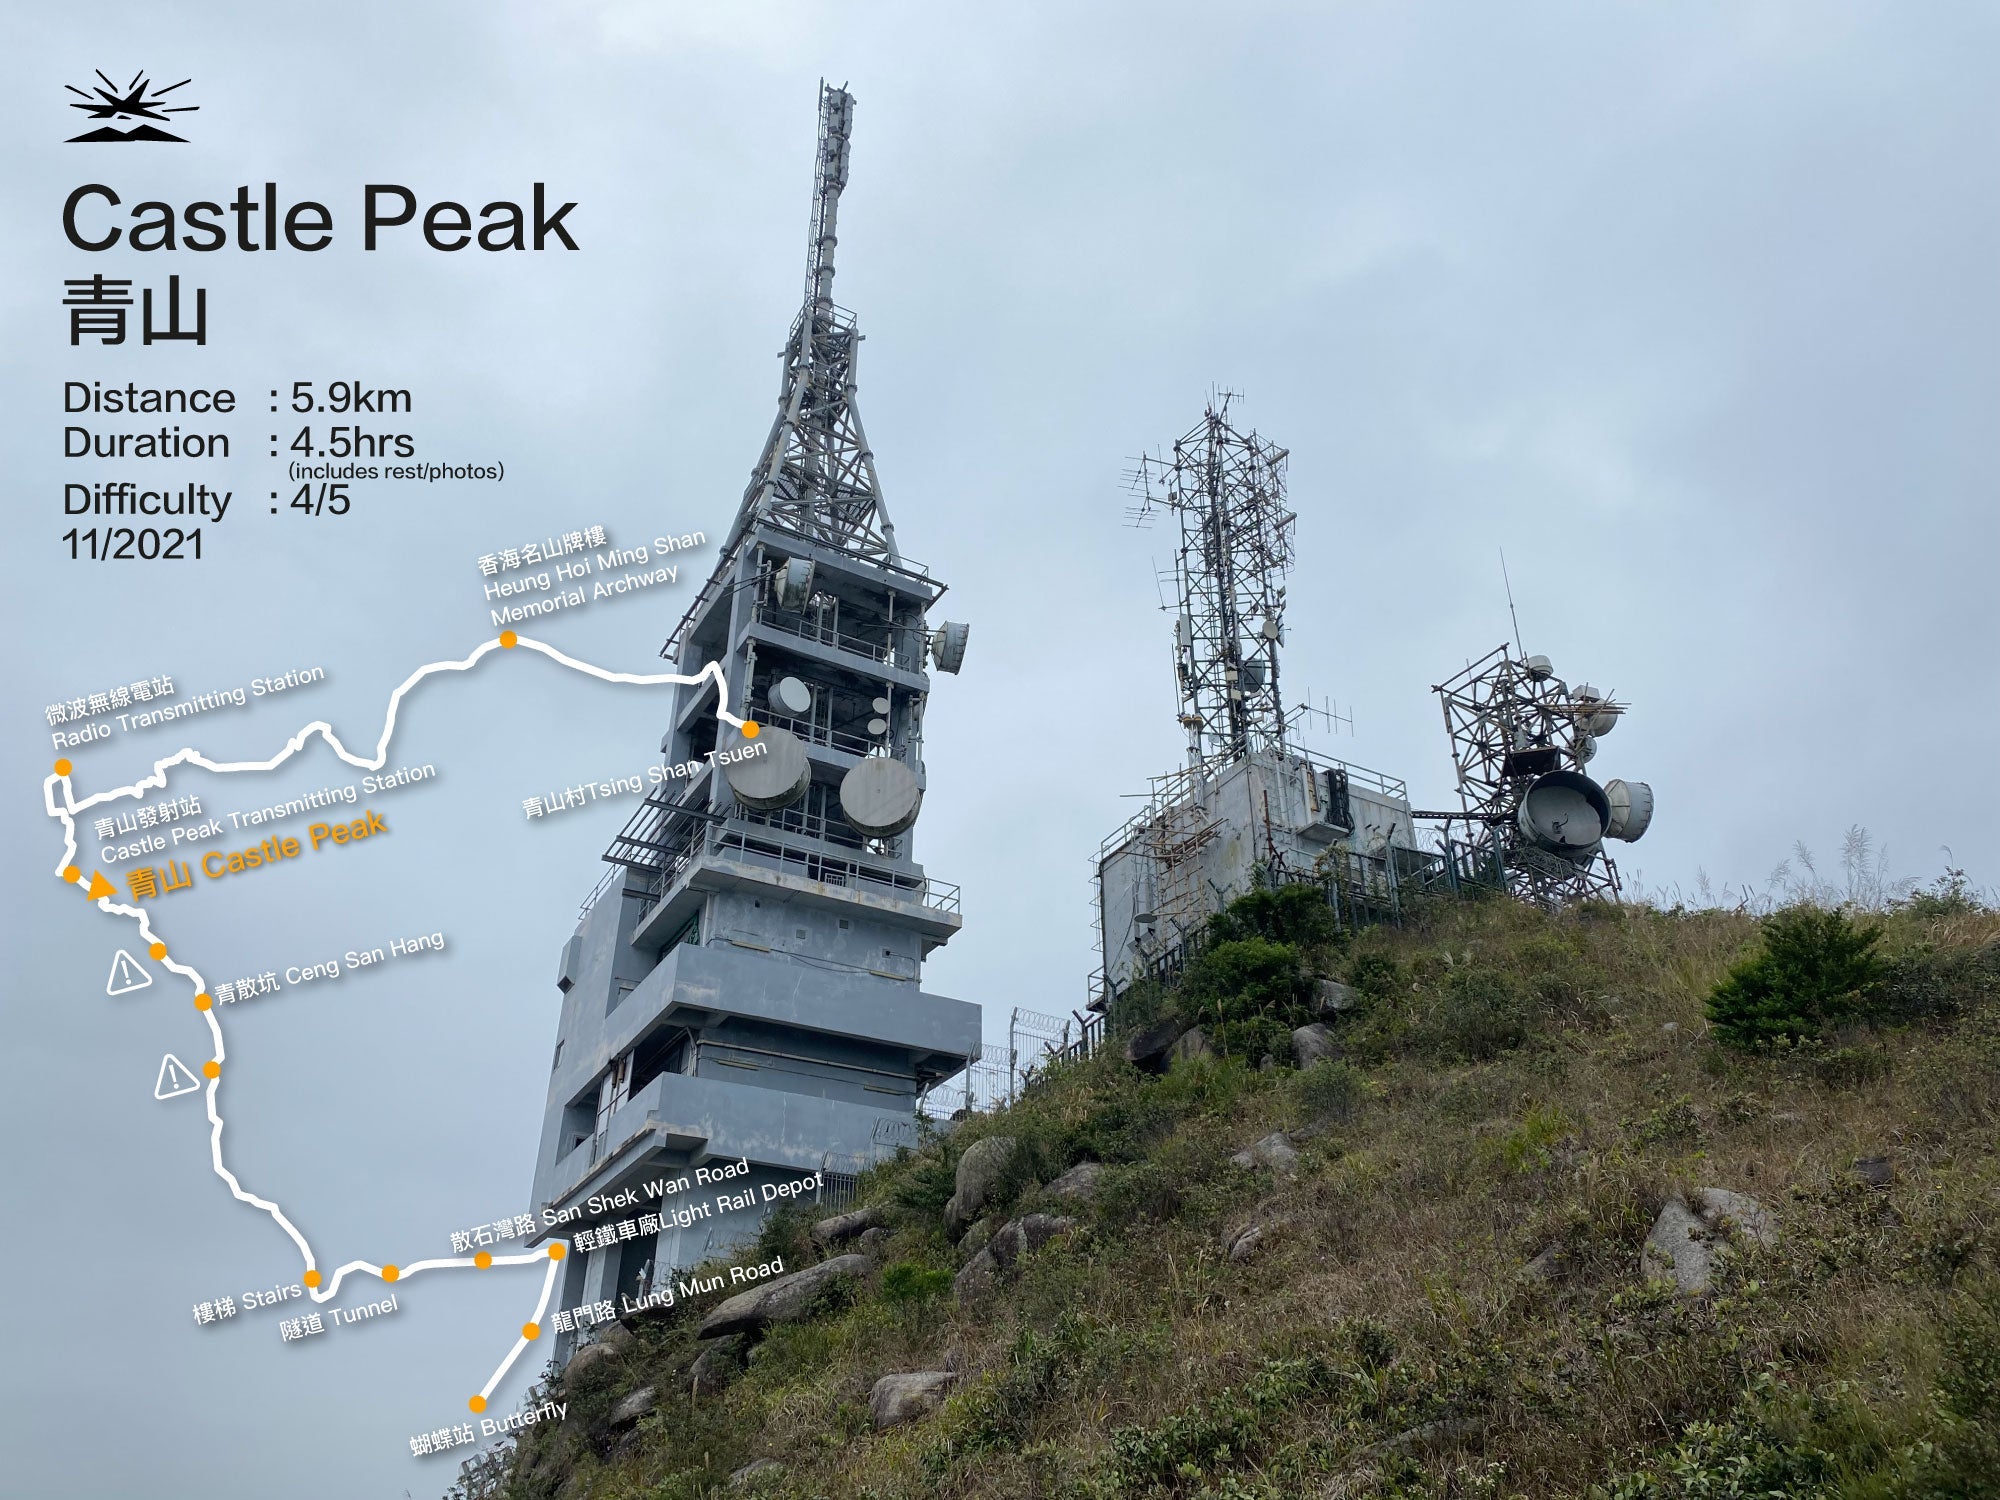 Castle Peak 583M